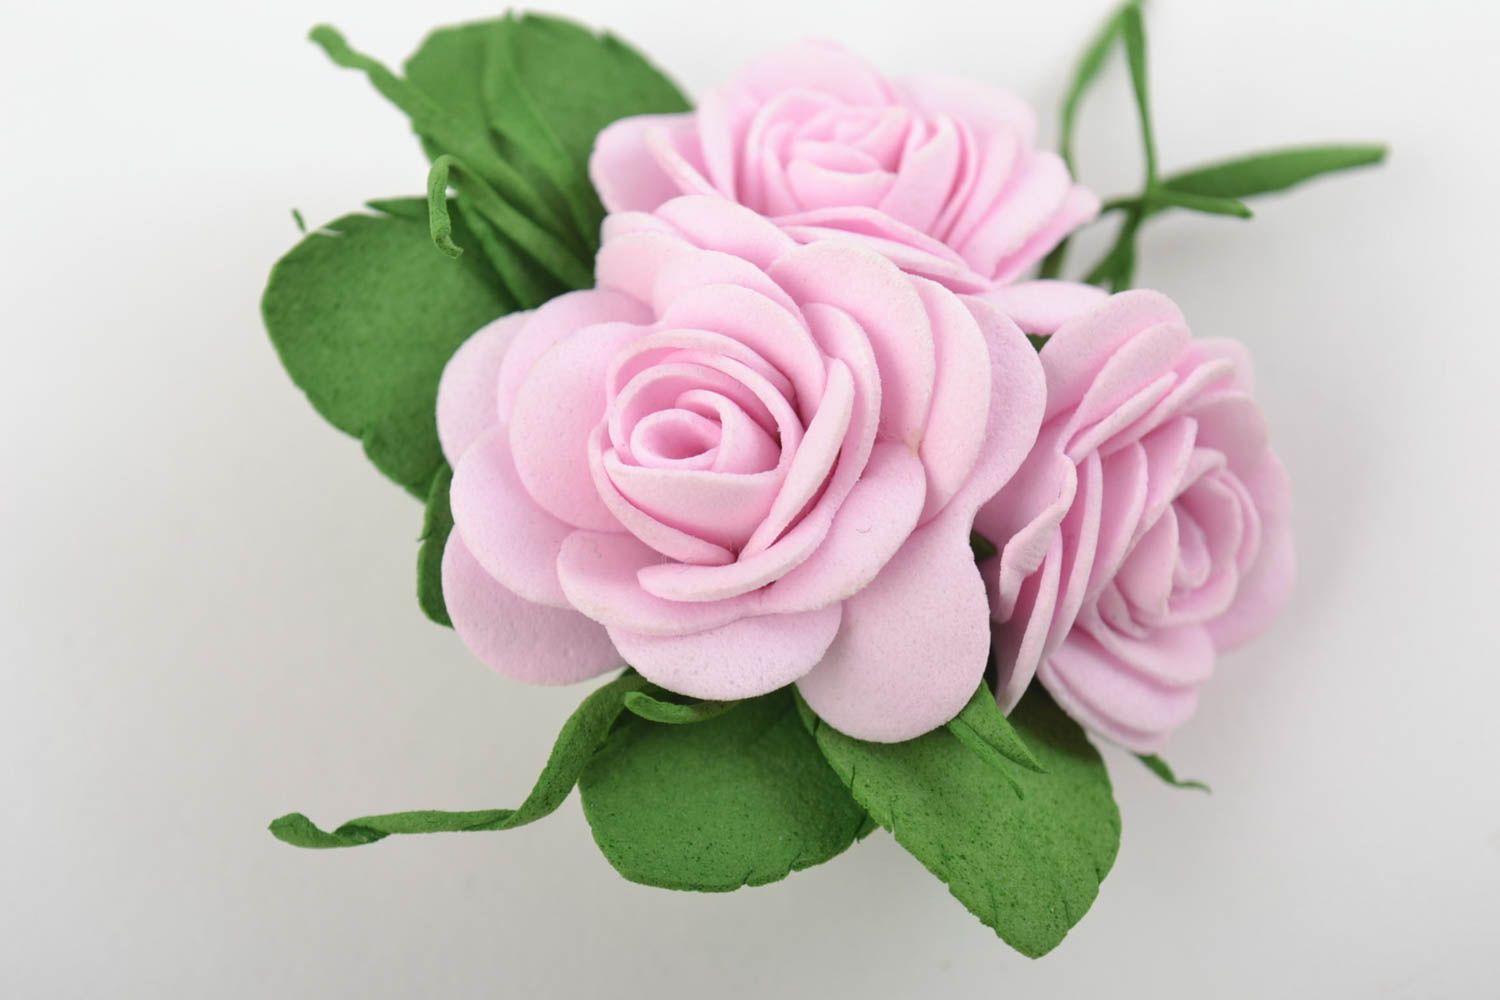 Авторская брошь из фоамирана с цветочками розовая нежная красивая ручной работы фото 8